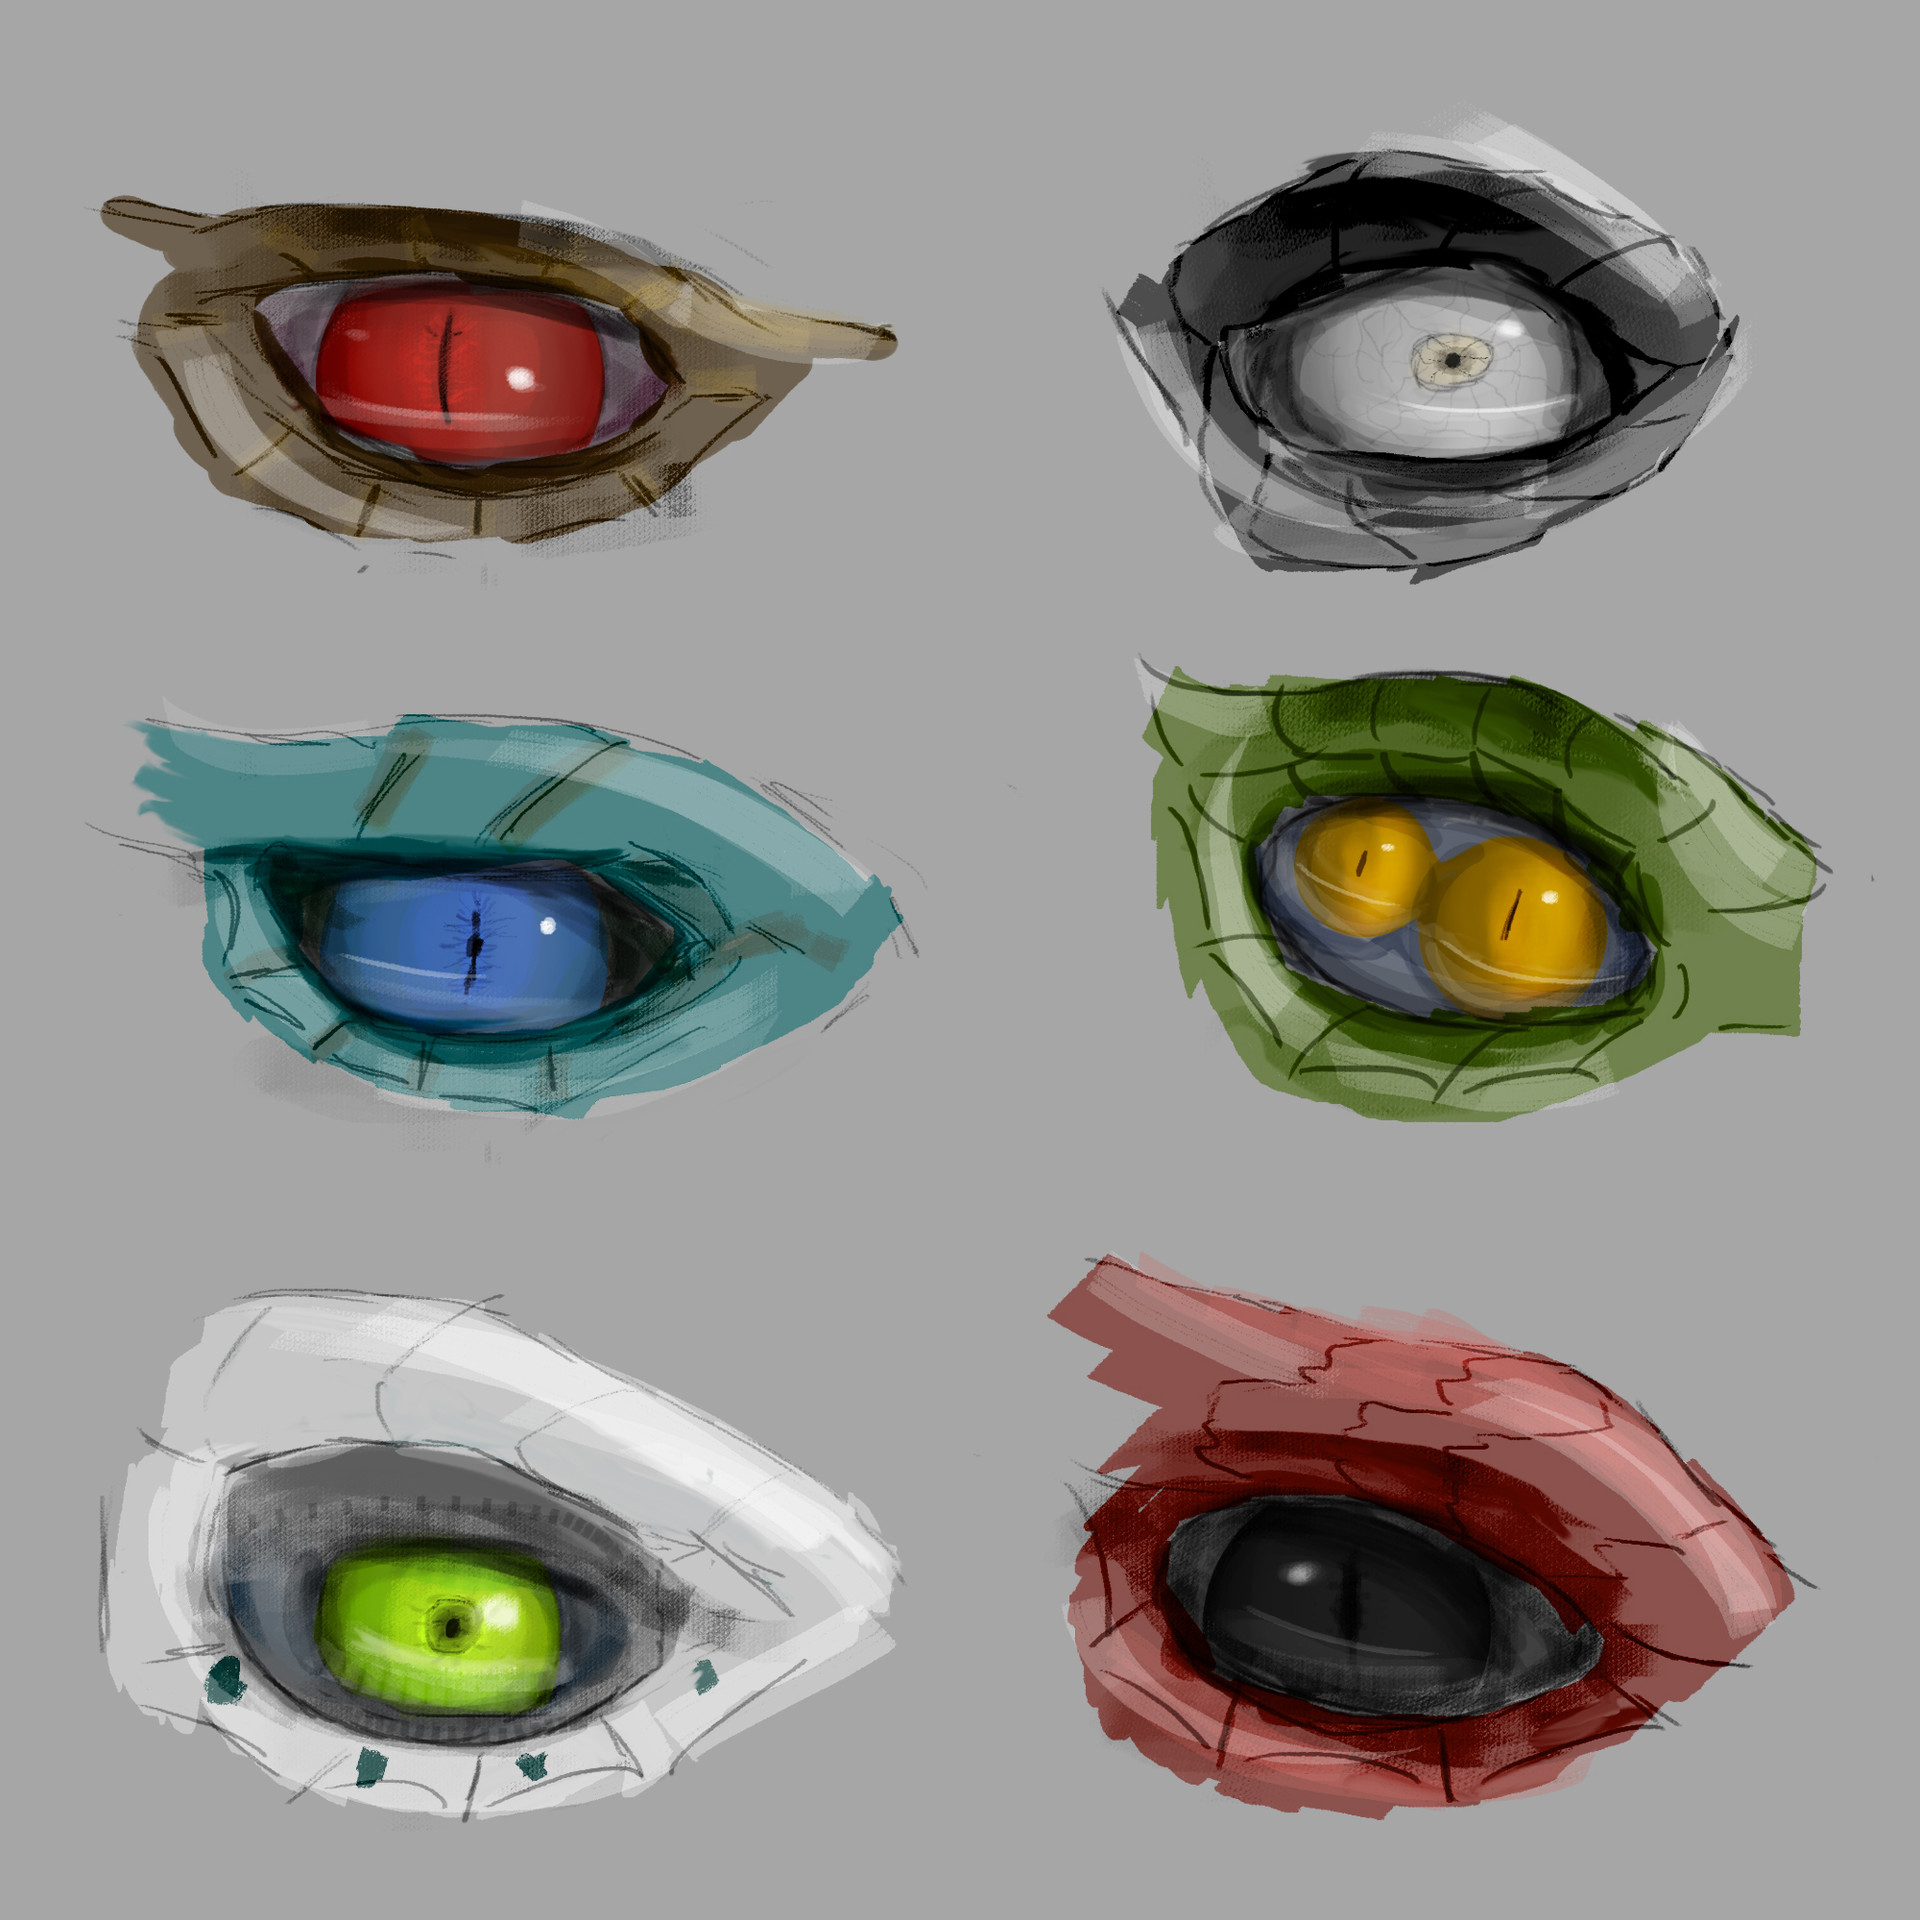 Josef Bartoň  Dragon eye sketches